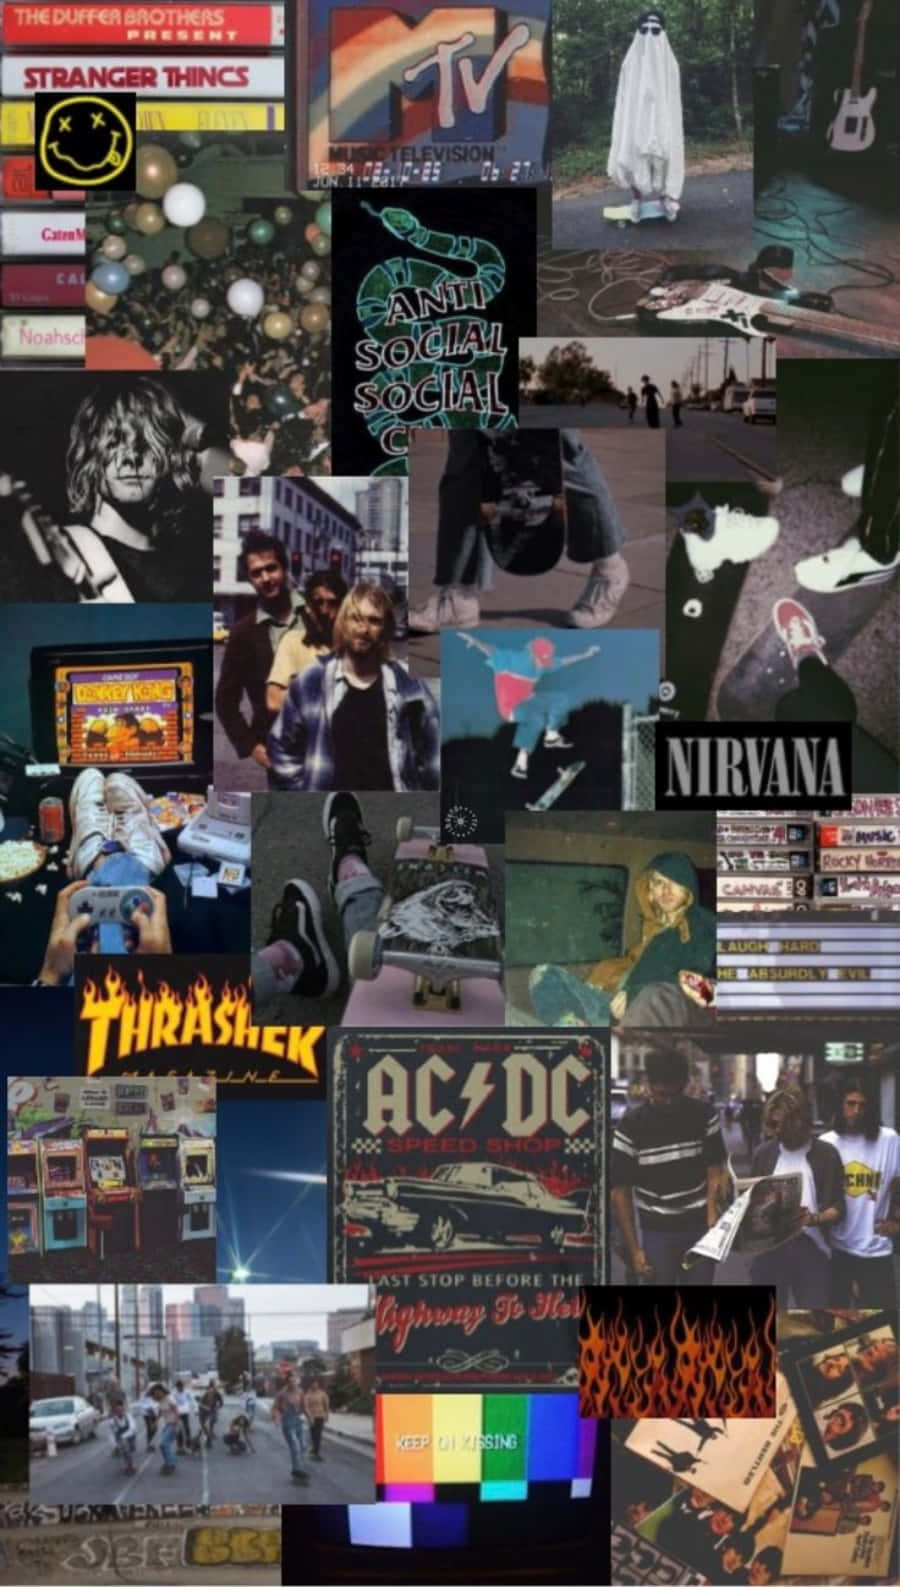 90s grunge rock